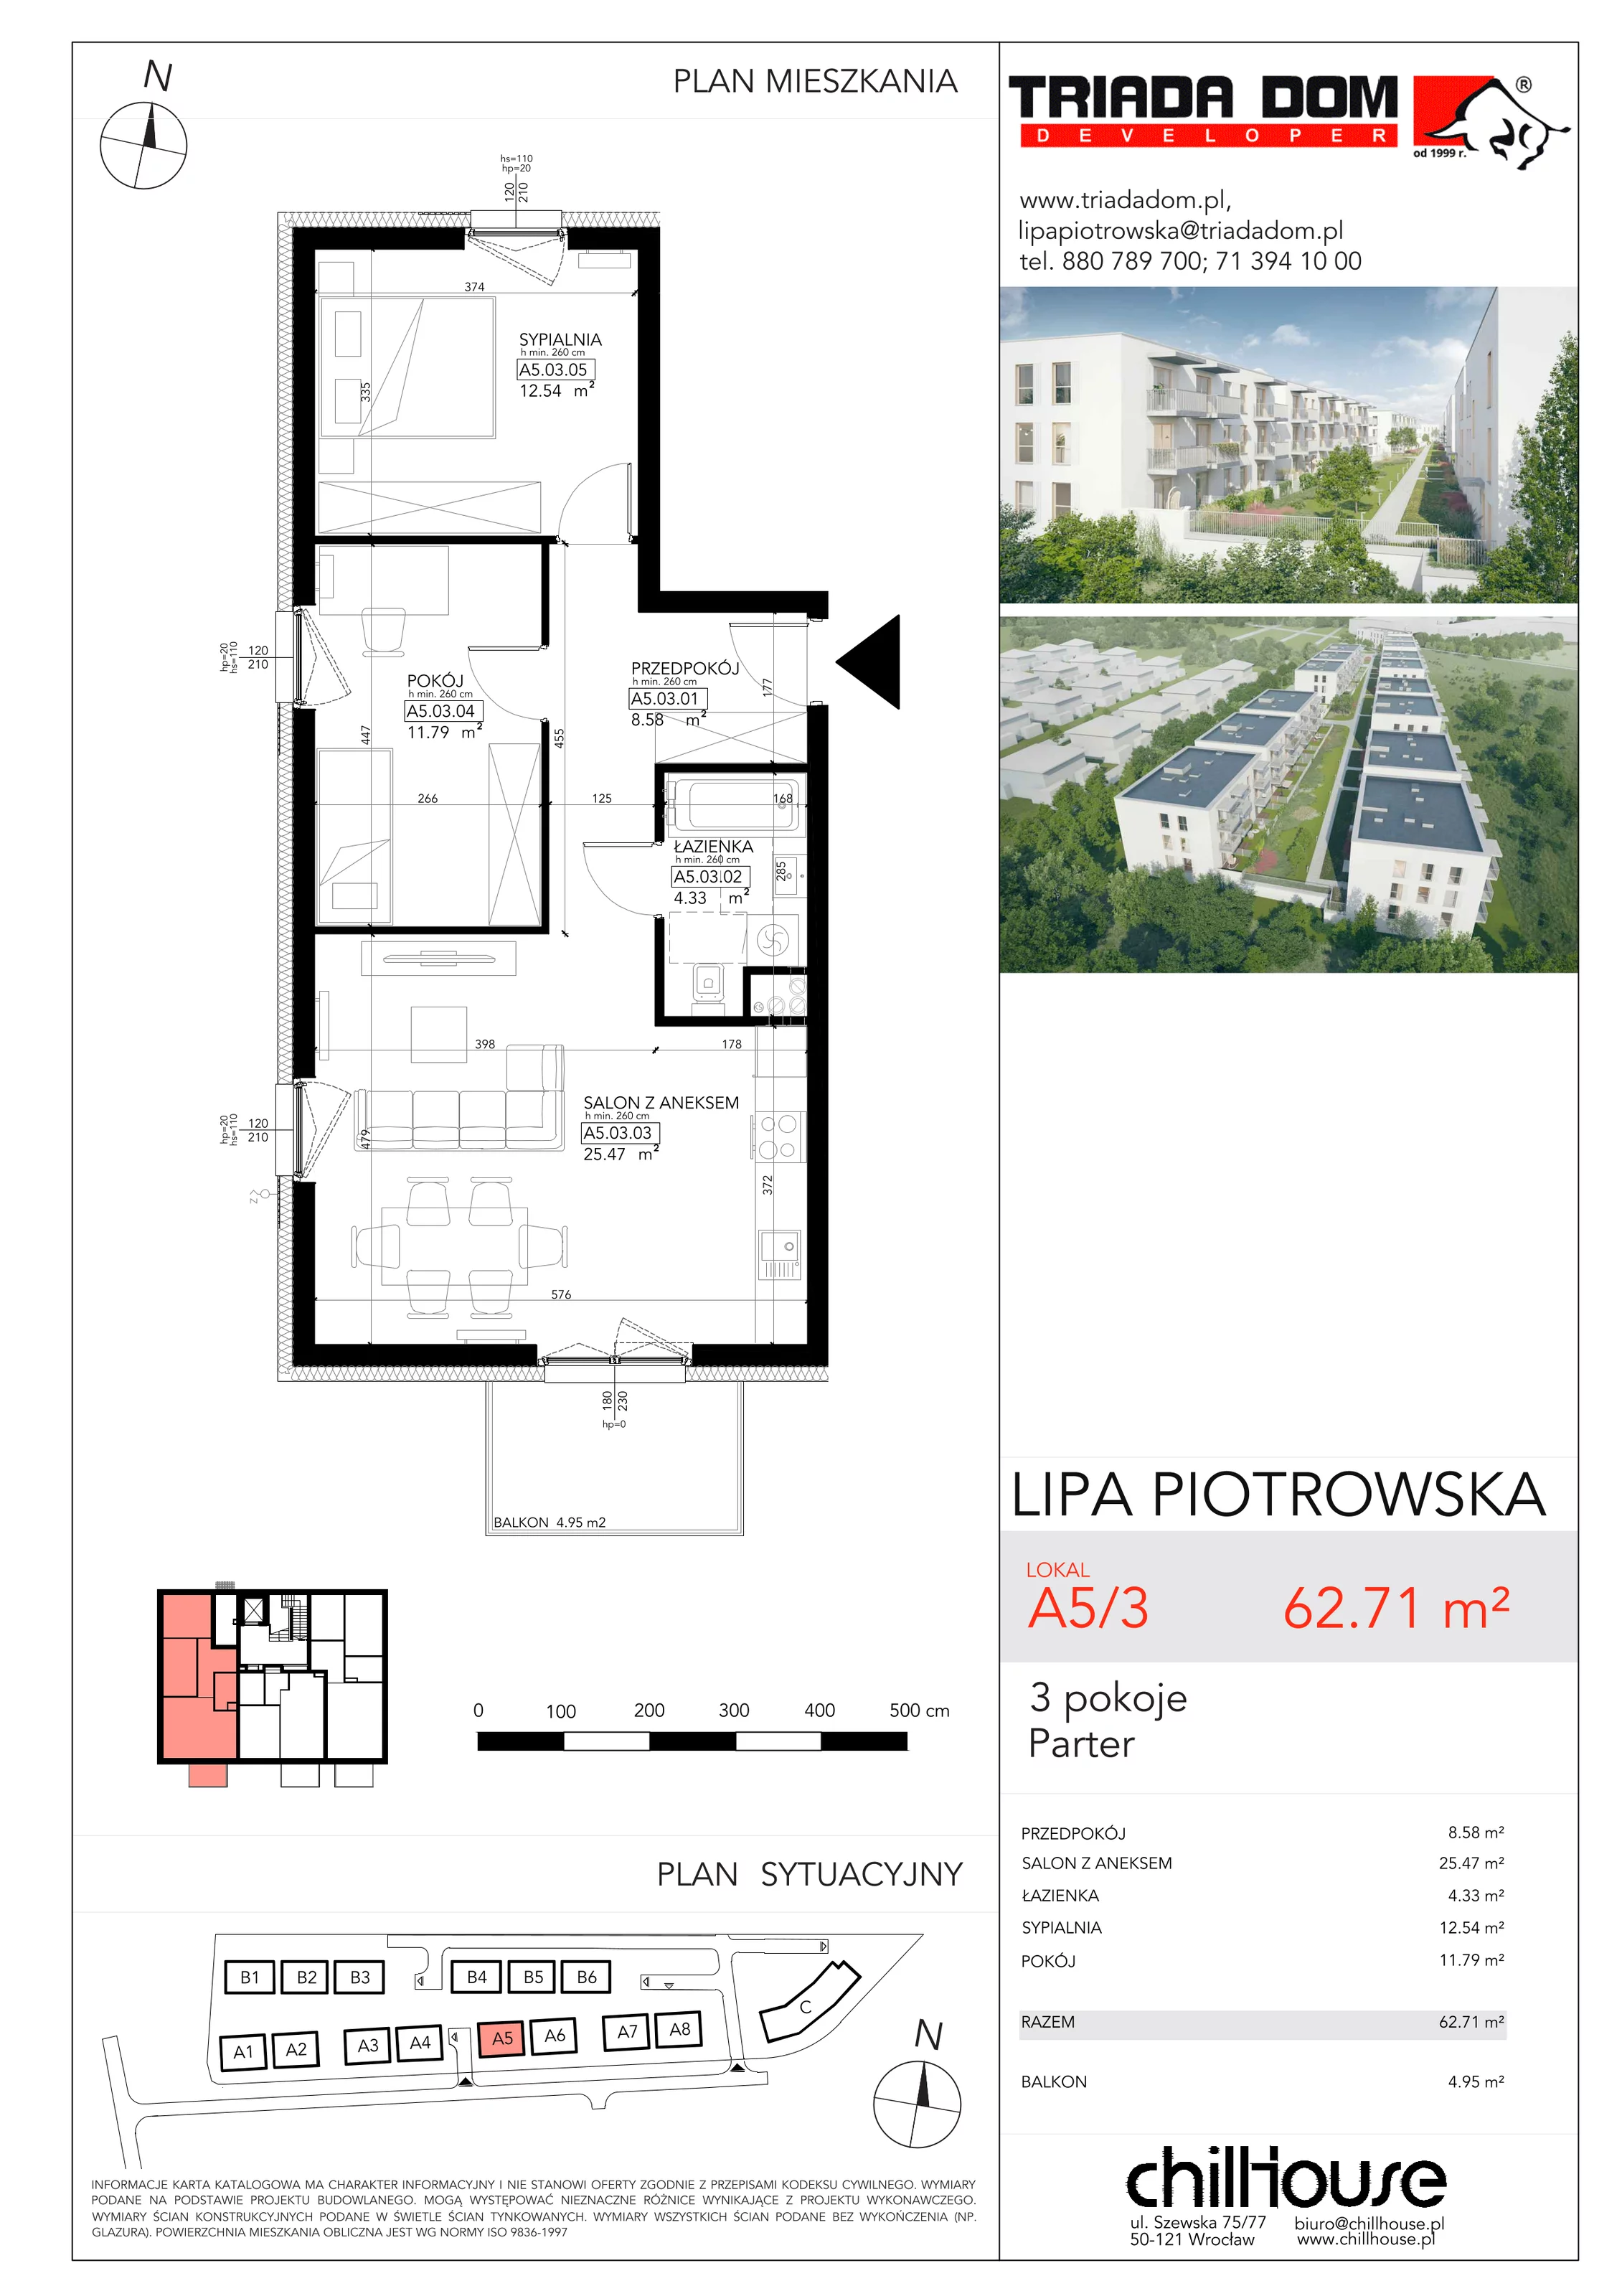 Mieszkanie 62,71 m², parter, oferta nr A53, Lipa Piotrowska, Wrocław, Lipa Piotrowska, ul. Lawendowa / Melisowa